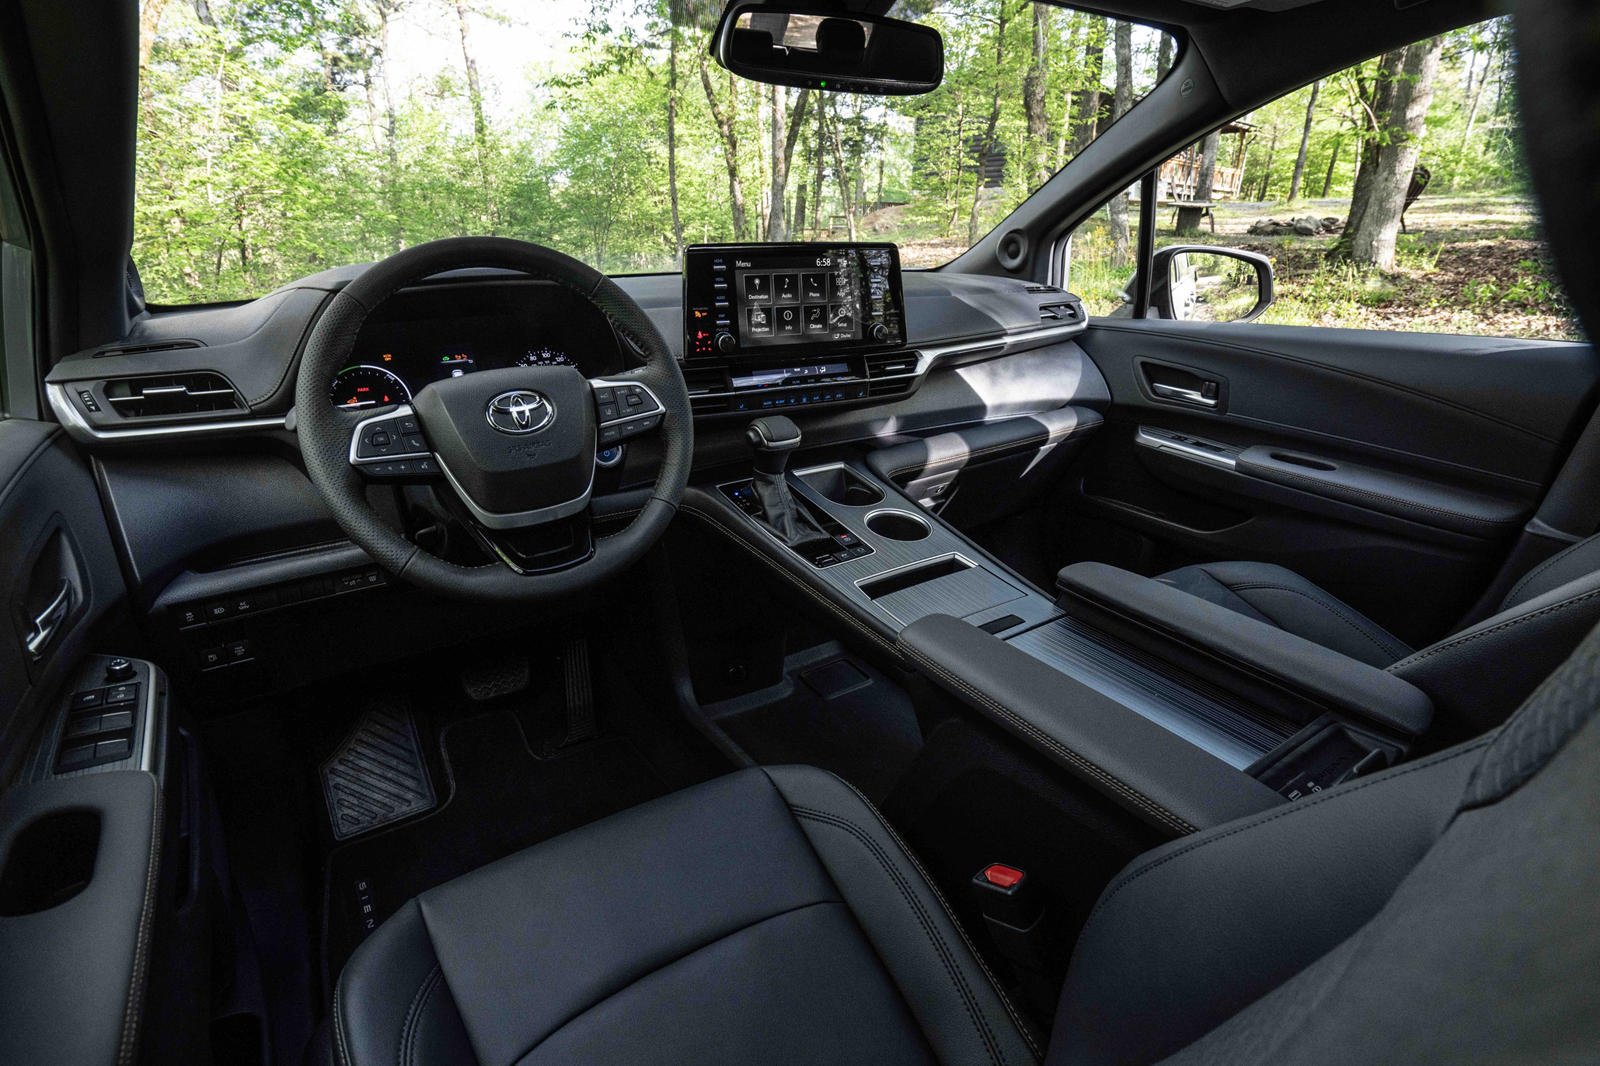 Toyota Sienna interior - Cockpit